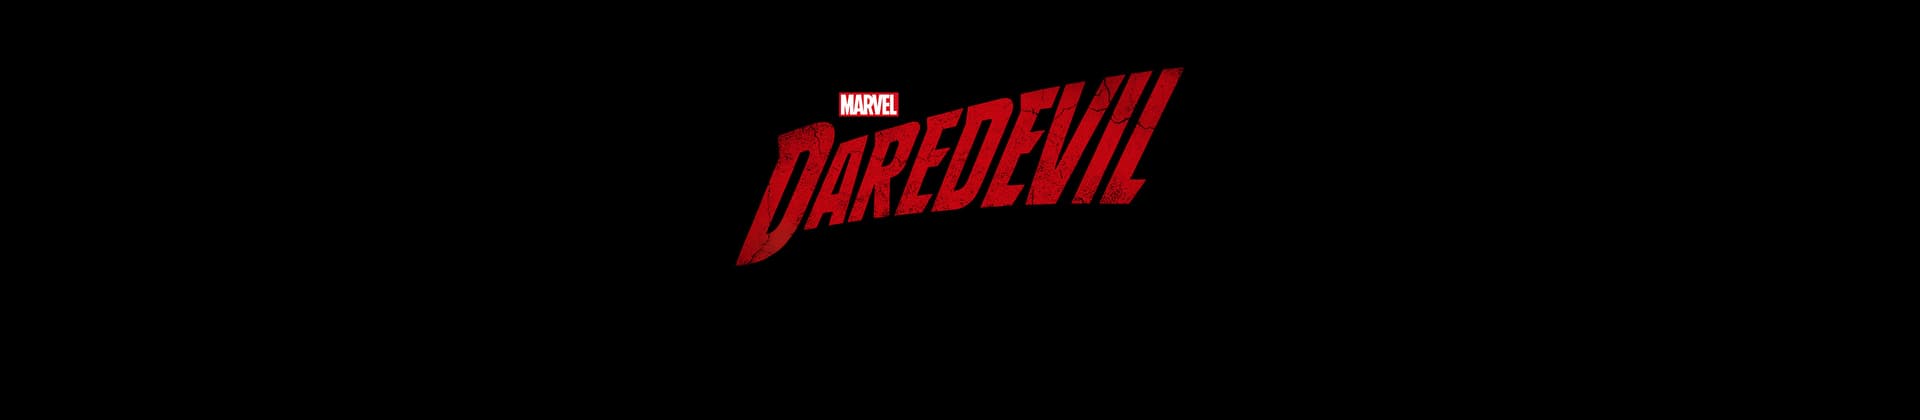 Marvel's Daredevil TV Show Logo On Black